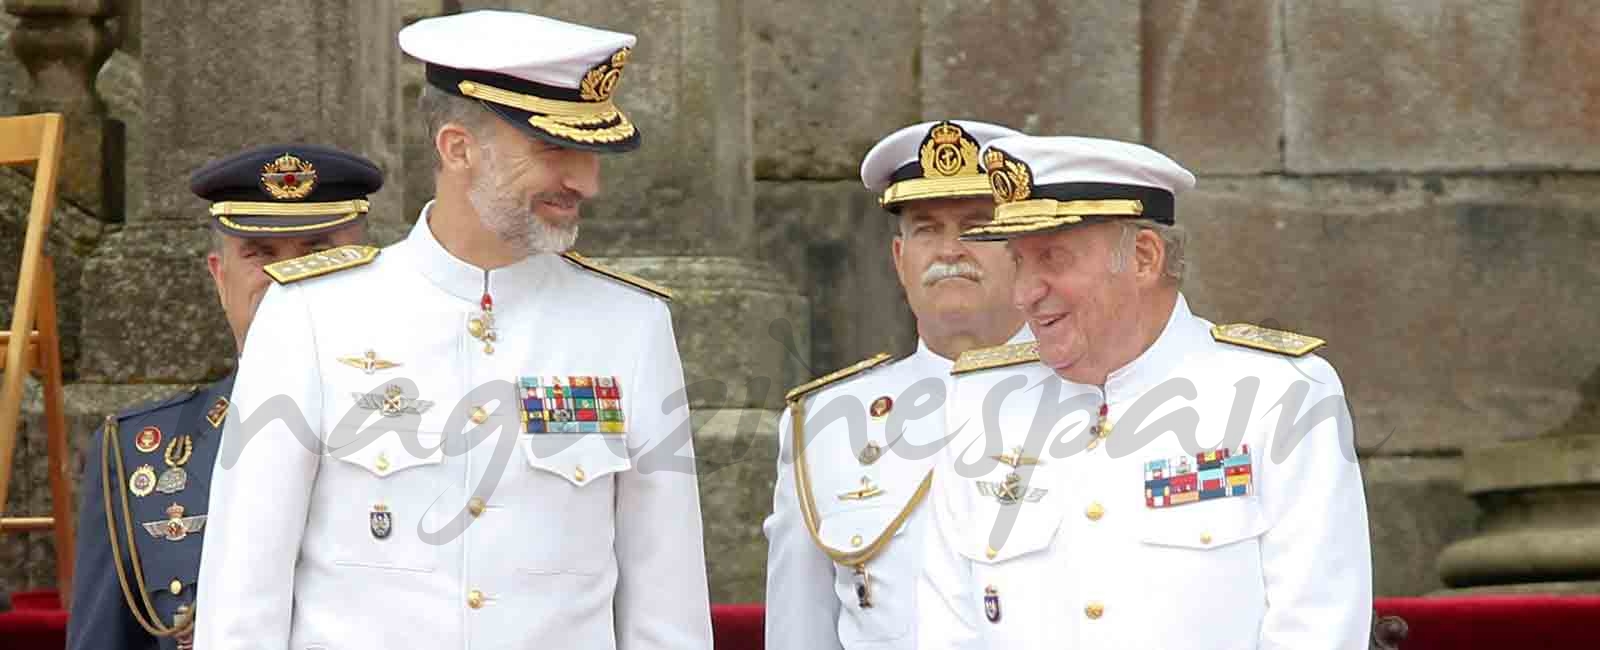 La complicidad de los reyes Felipe y Juan Carlos